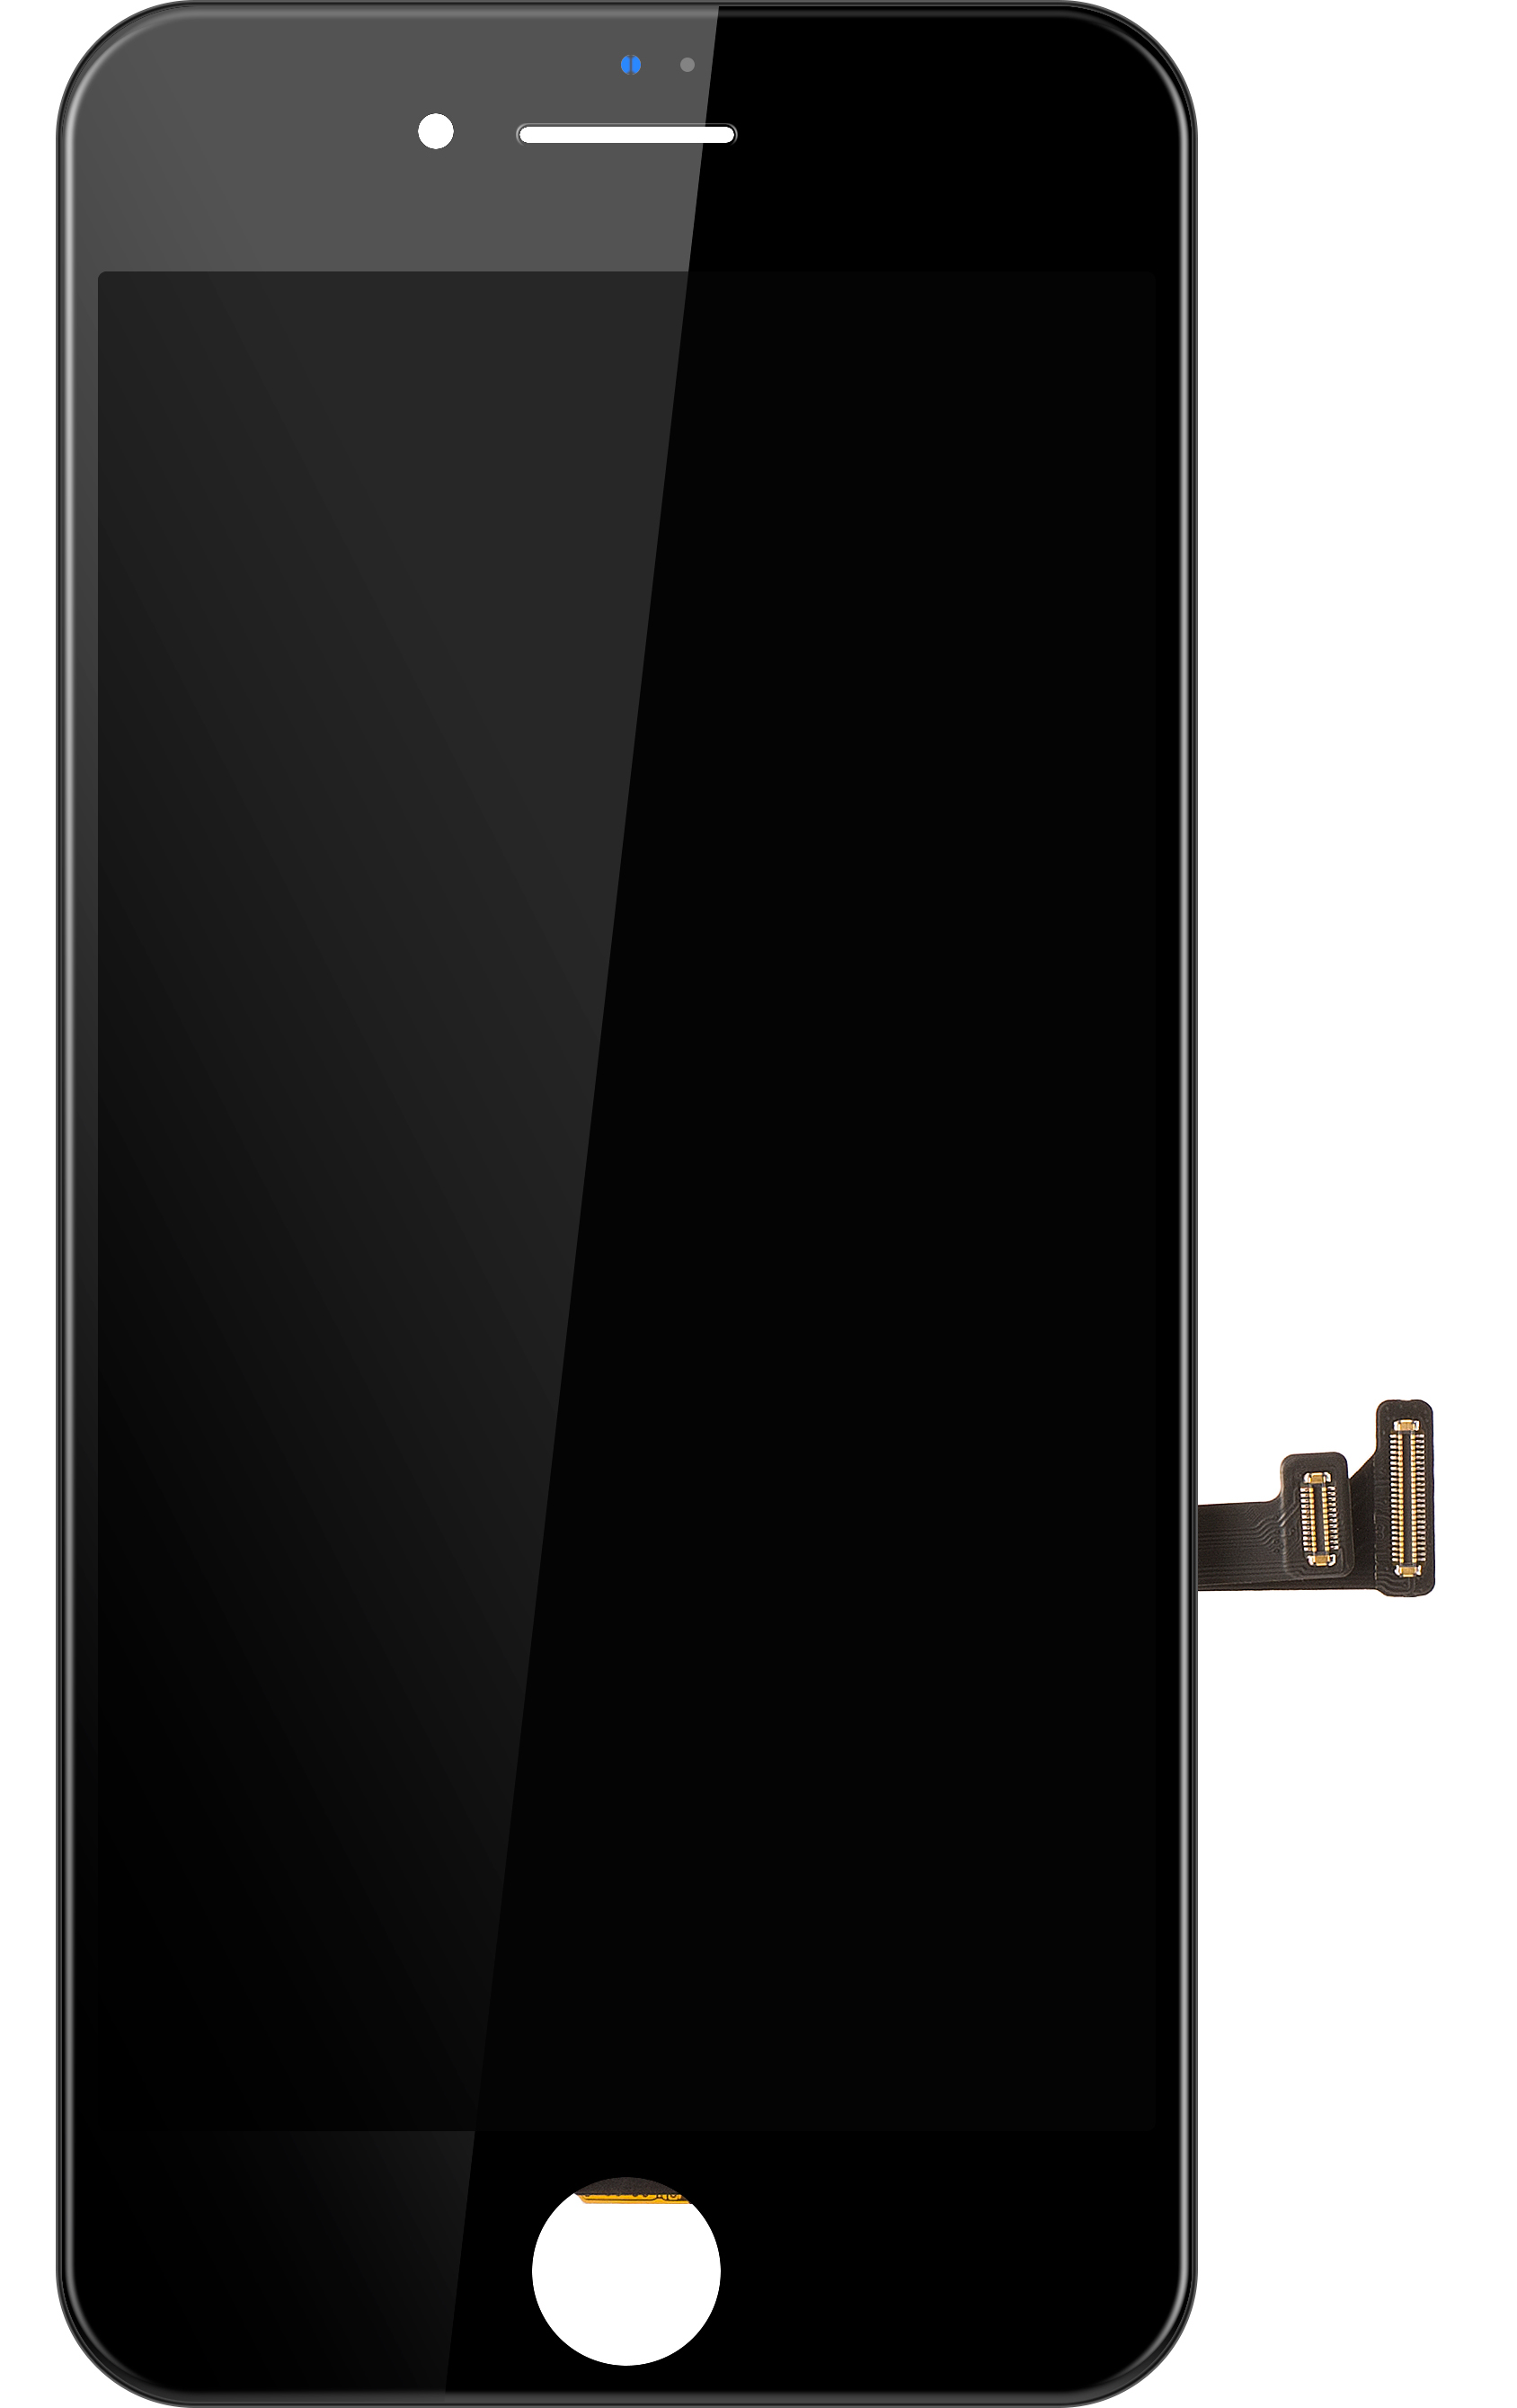 Apple iPhone 7 Plus Black LCD Display Module (Refurbished)